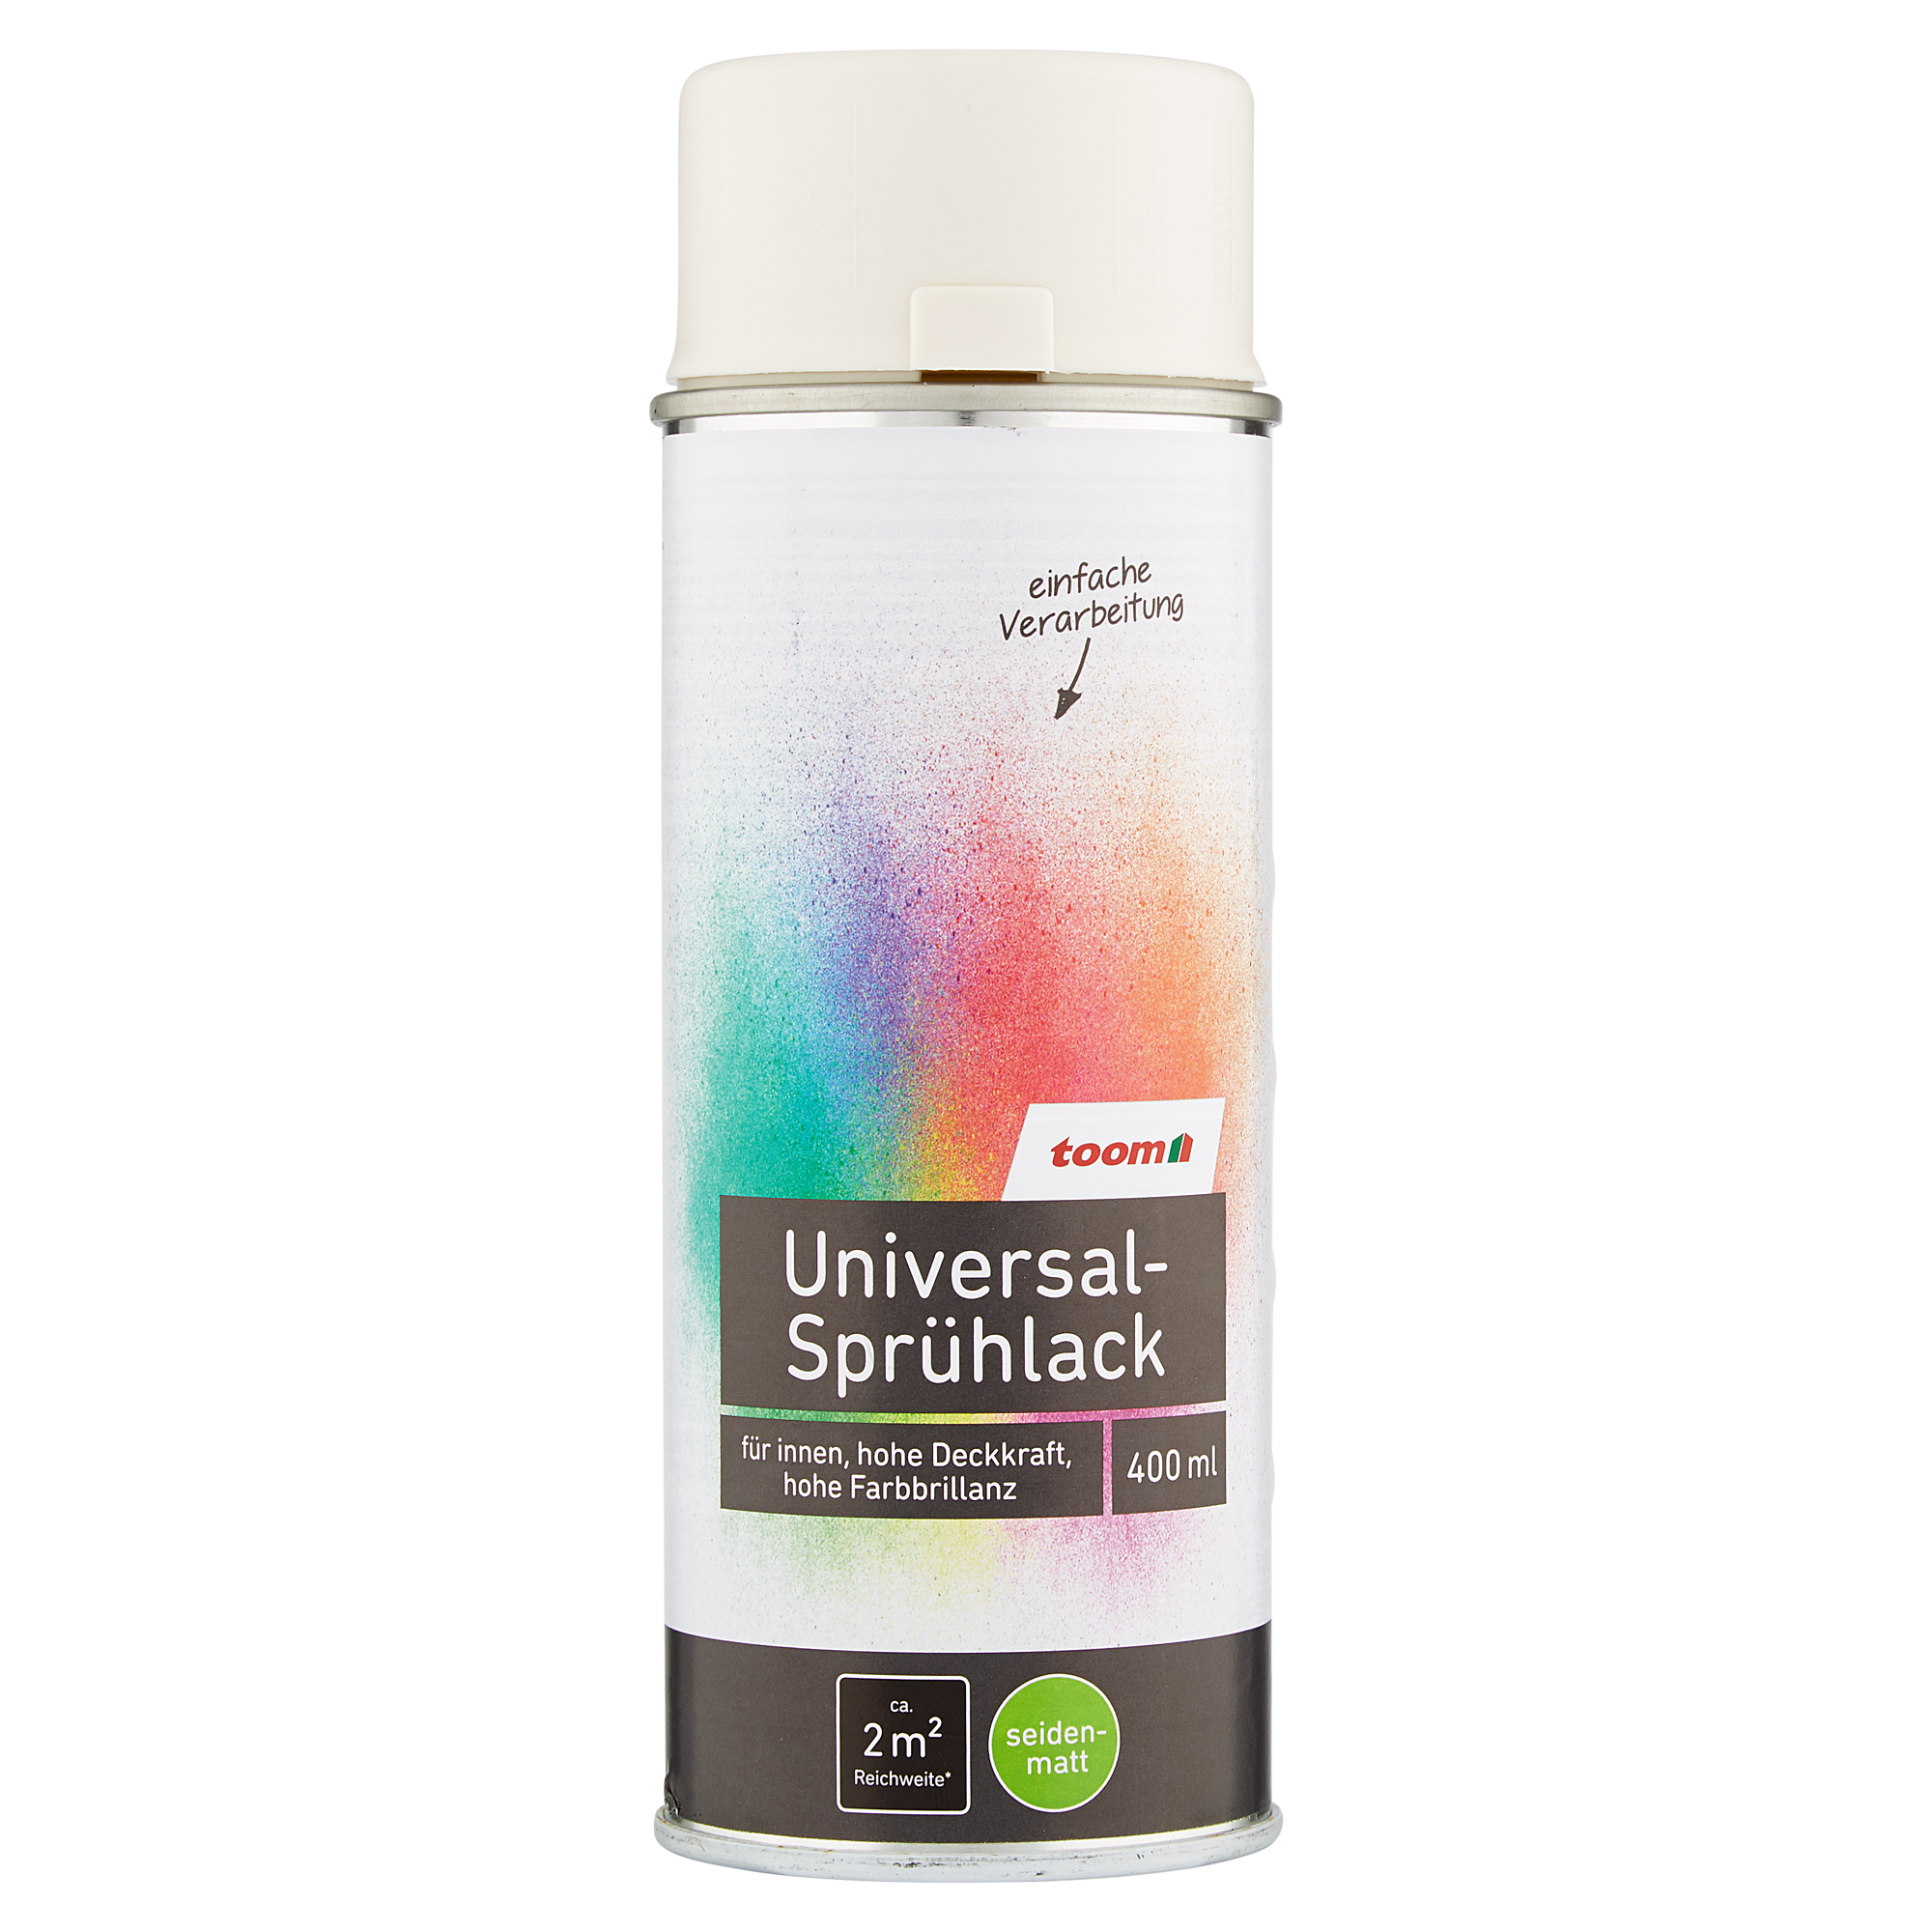 Universal-Sprühlack 'Bergkristall' cremeweiß seidenmatt 400 ml + product picture